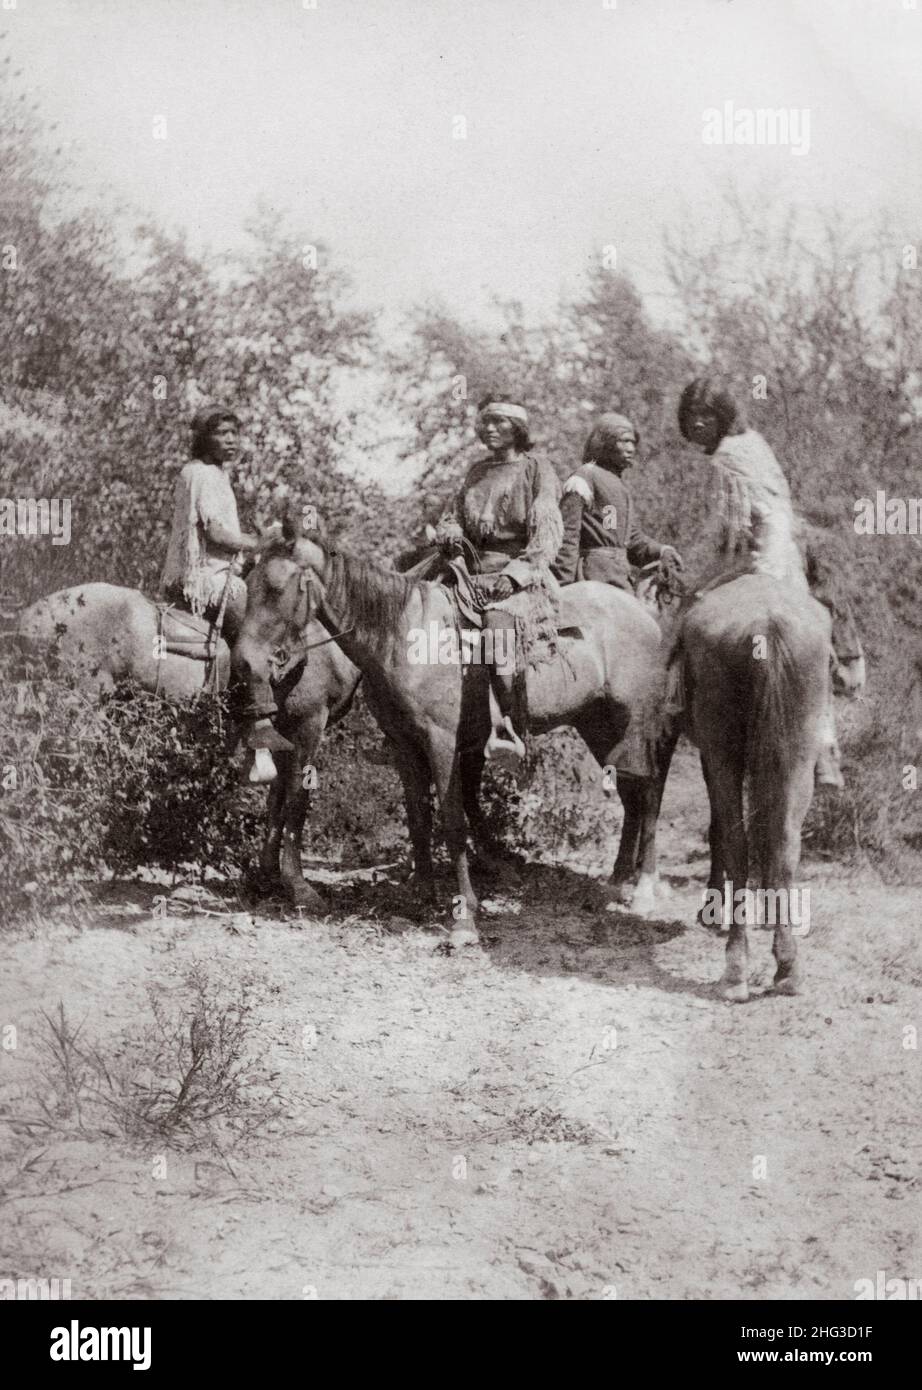 Foto vintage de los indios del Valle de Colorado. Nos encontramos en la carretera. EE.UU. 1870-1880 Foto de stock